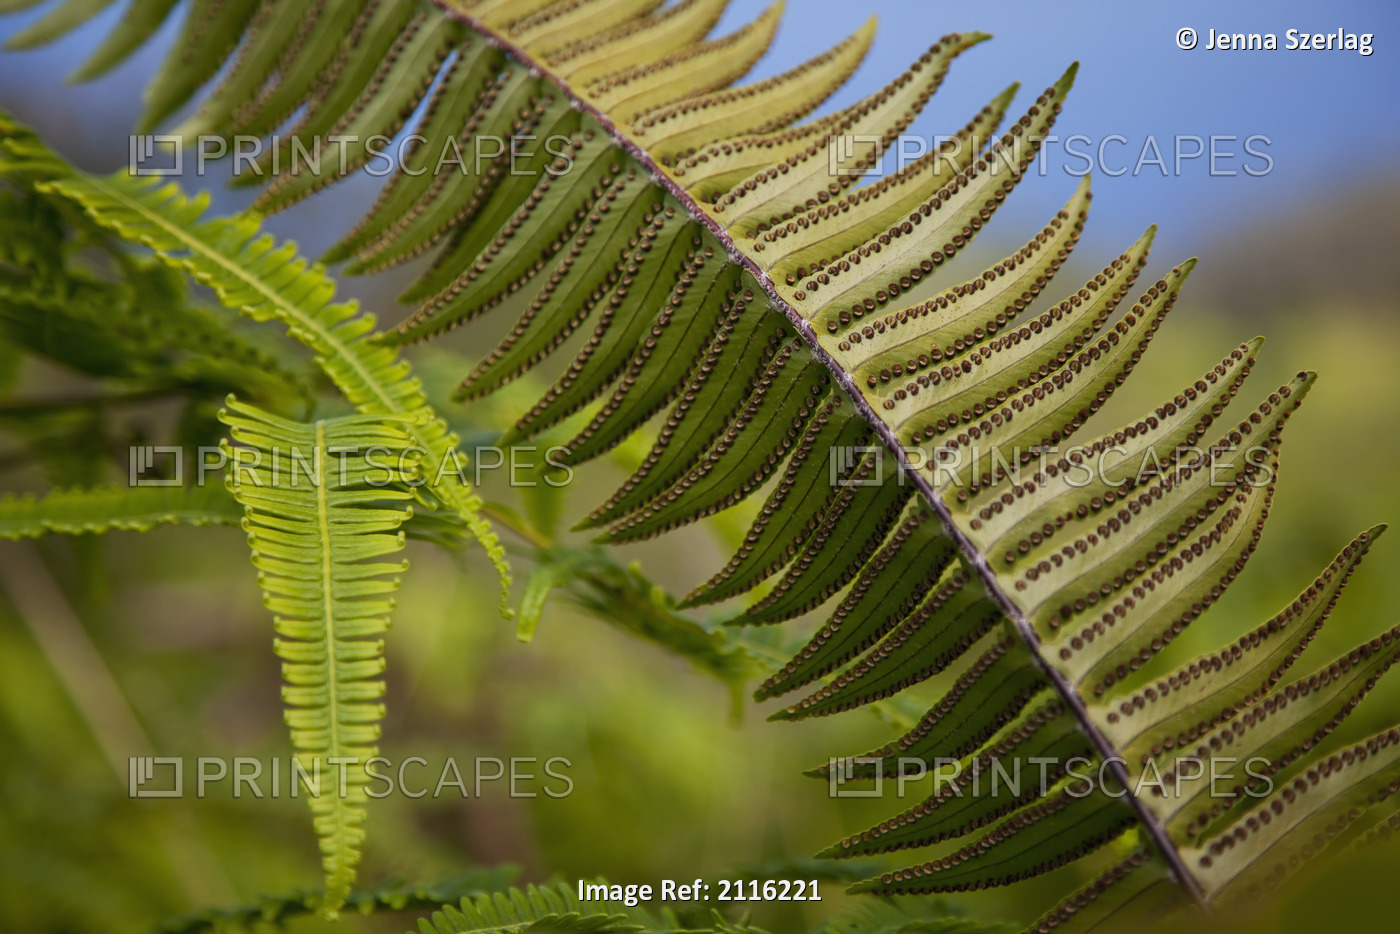 Hawaii, Maui, Waihee, A closeup of green fern with seeds.